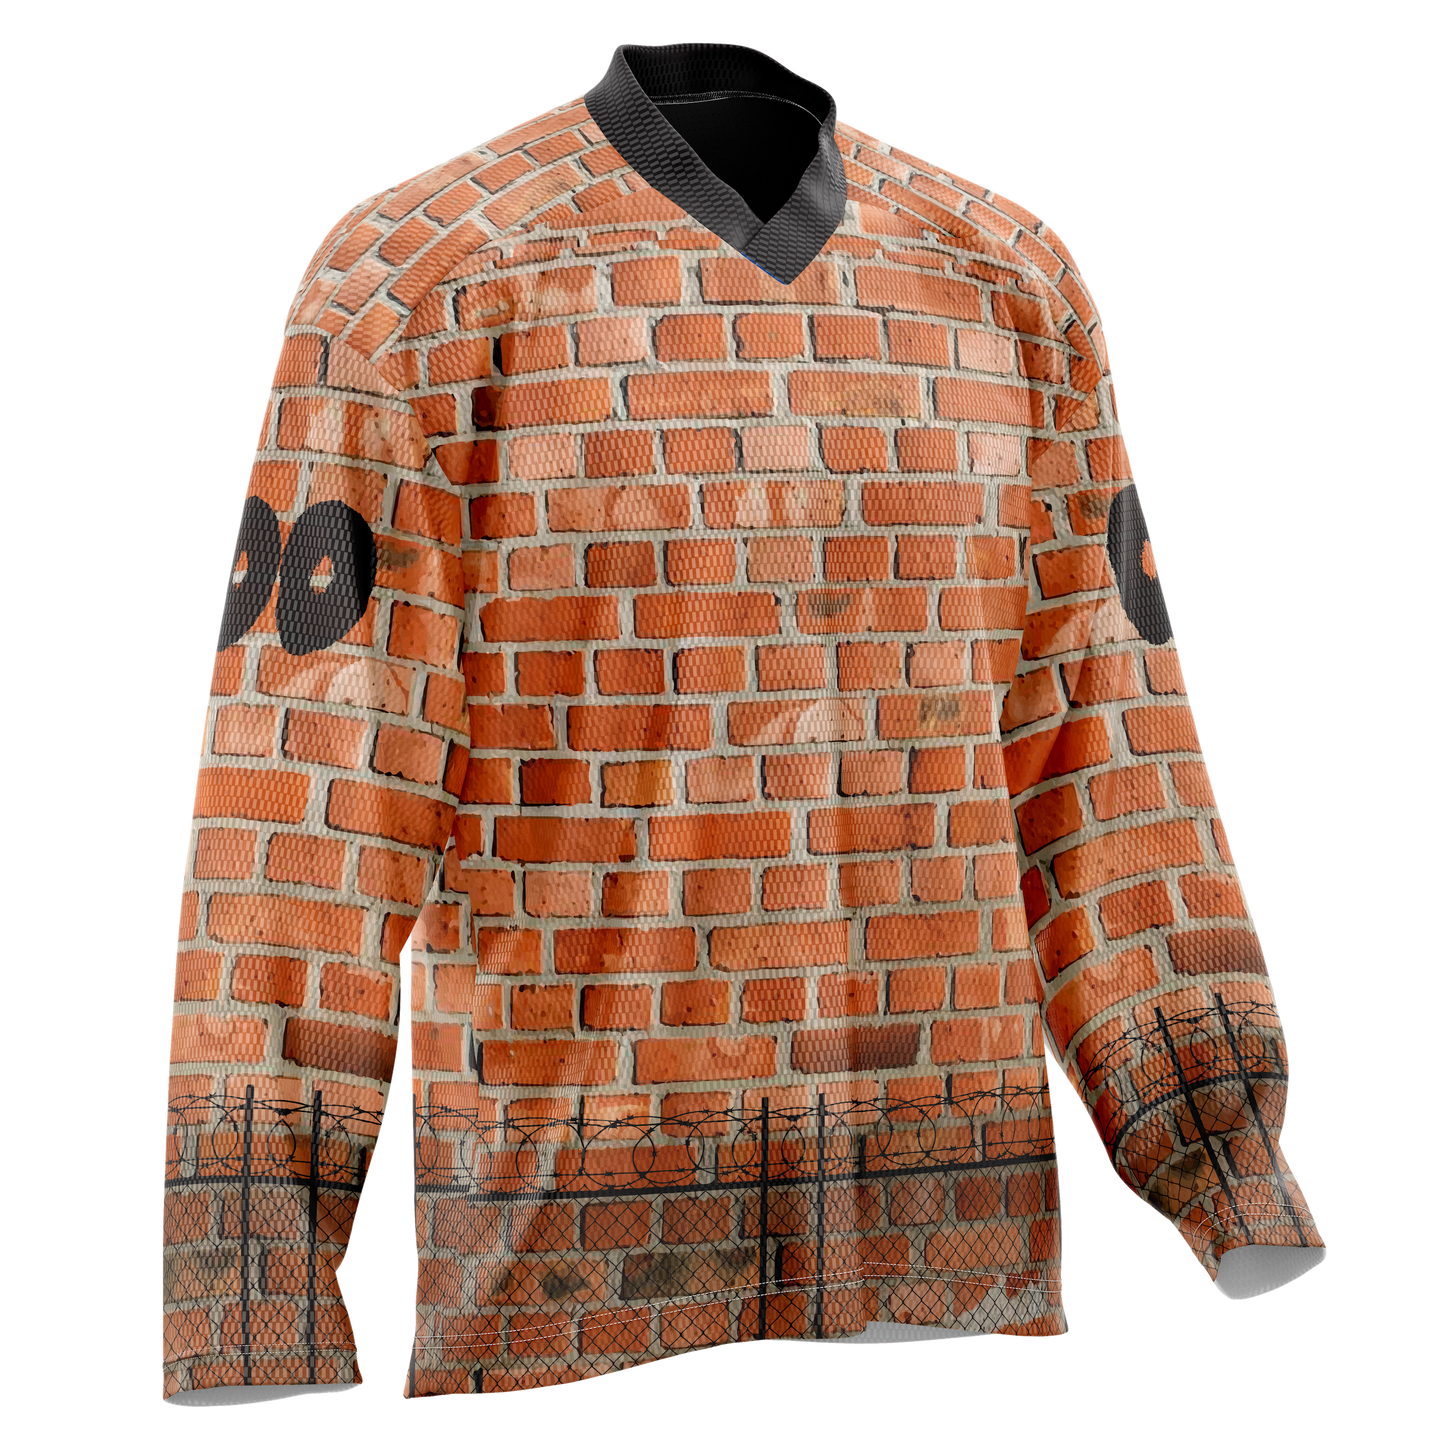 Brick Wall Ice Hockey Jersey